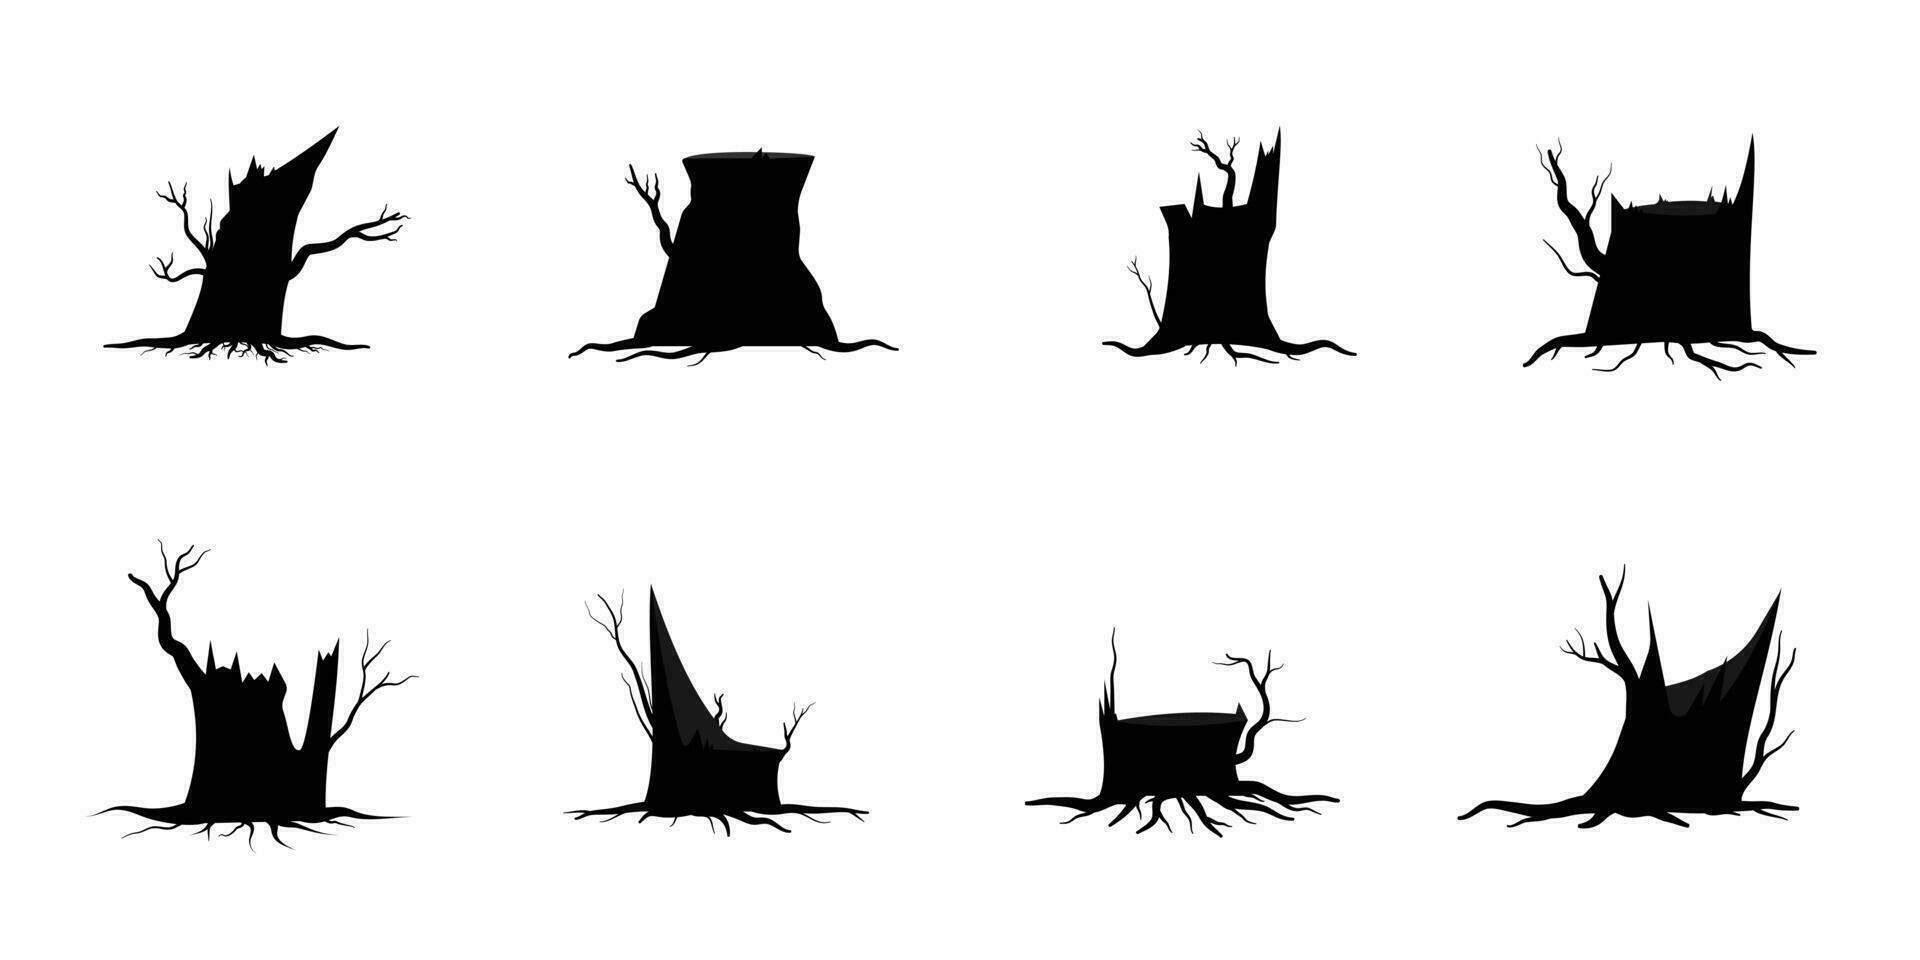 árvore de galho preto ou conjunto de silhuetas de árvores nuas. ilustrações isoladas desenhadas à mão. vetor